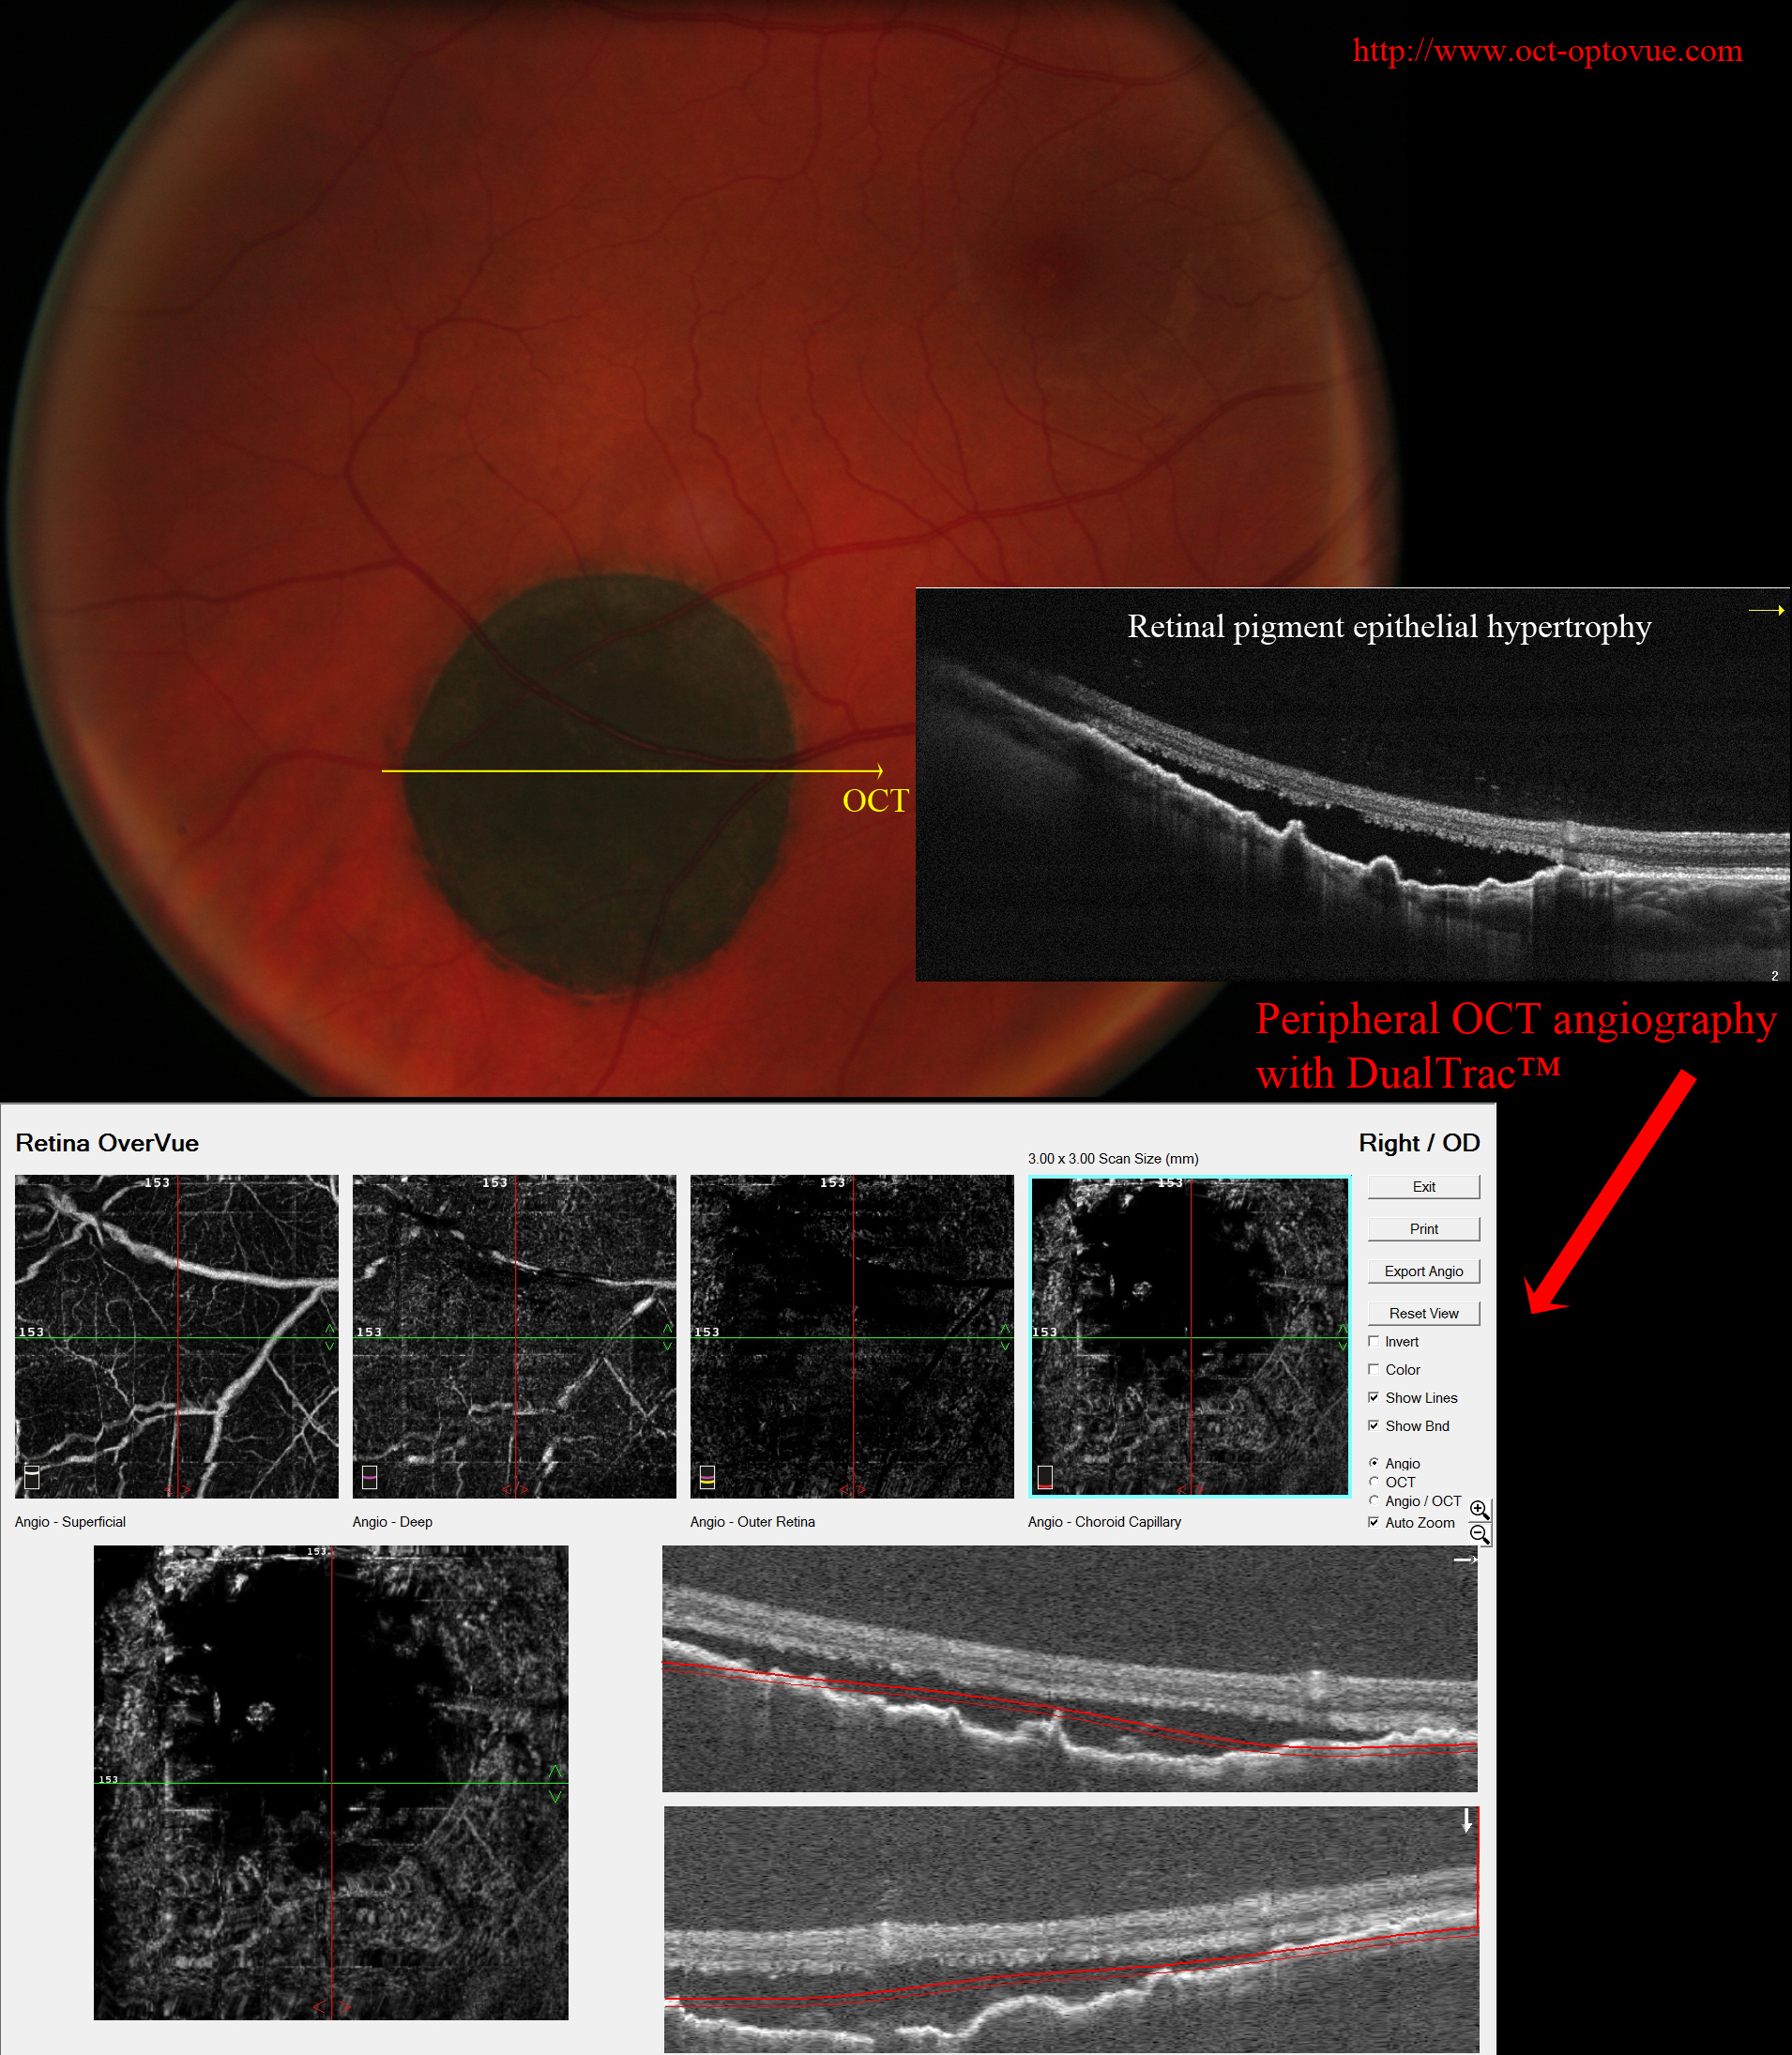 rpe hypertrophy dualtrac retinal pigment epithelial